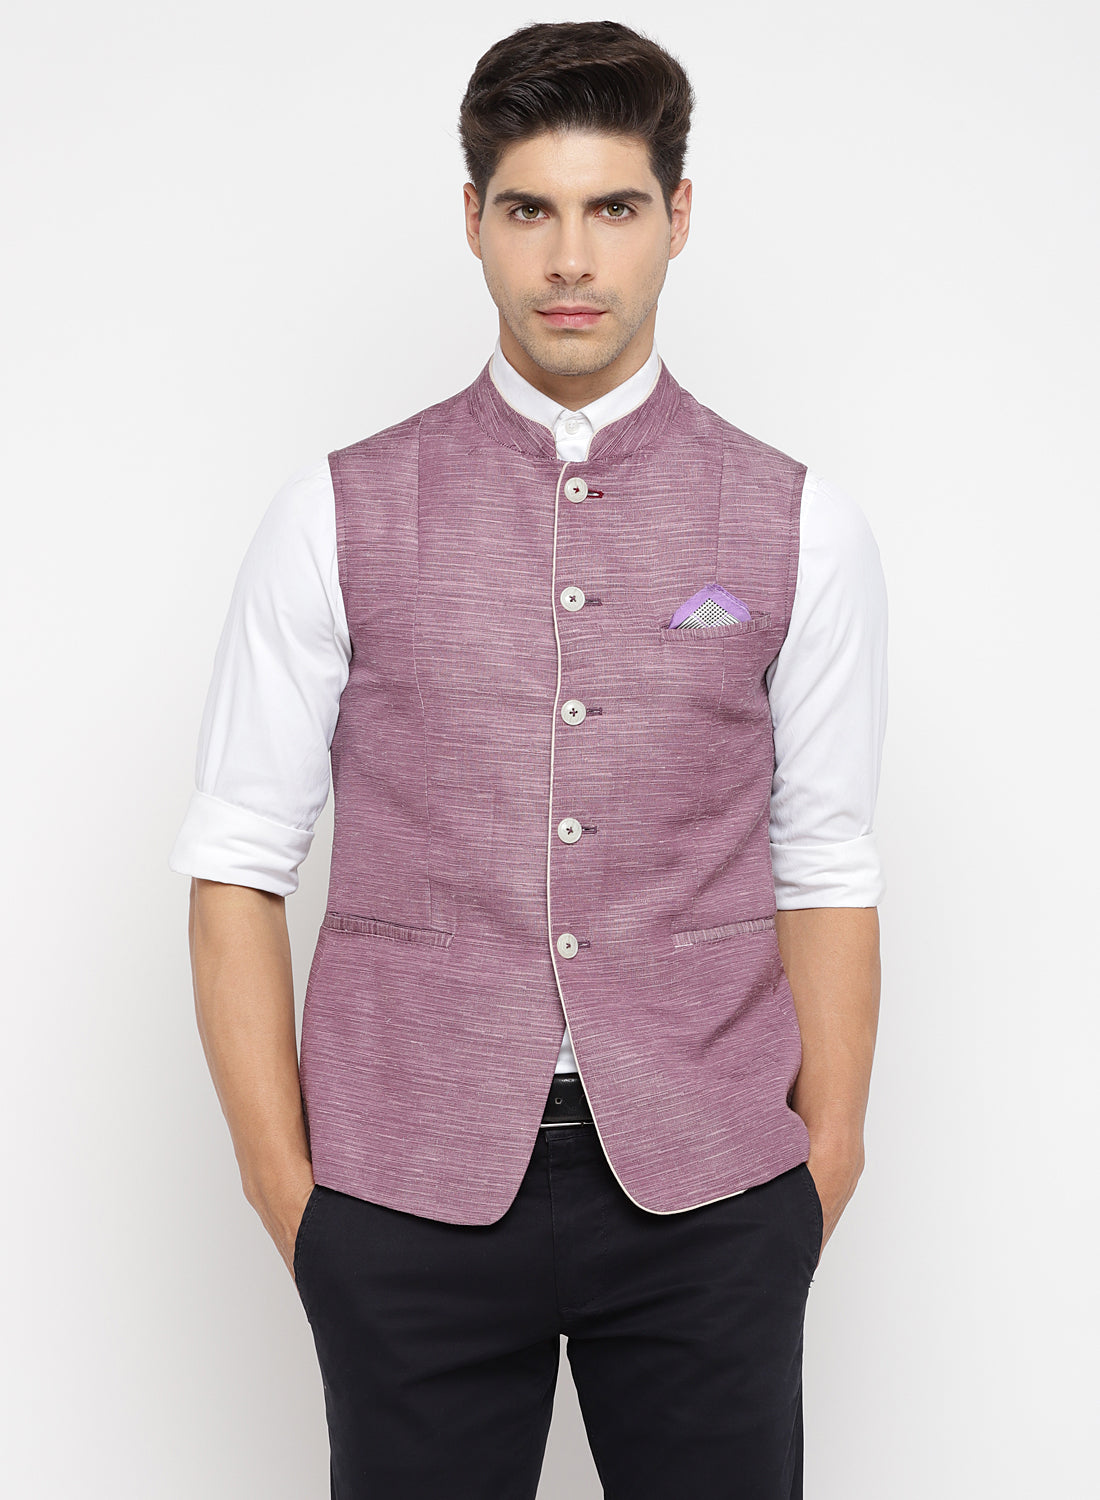 Buy Ethnic Modi jacket/Nehru jacket/Koti White (L) at Amazon.in